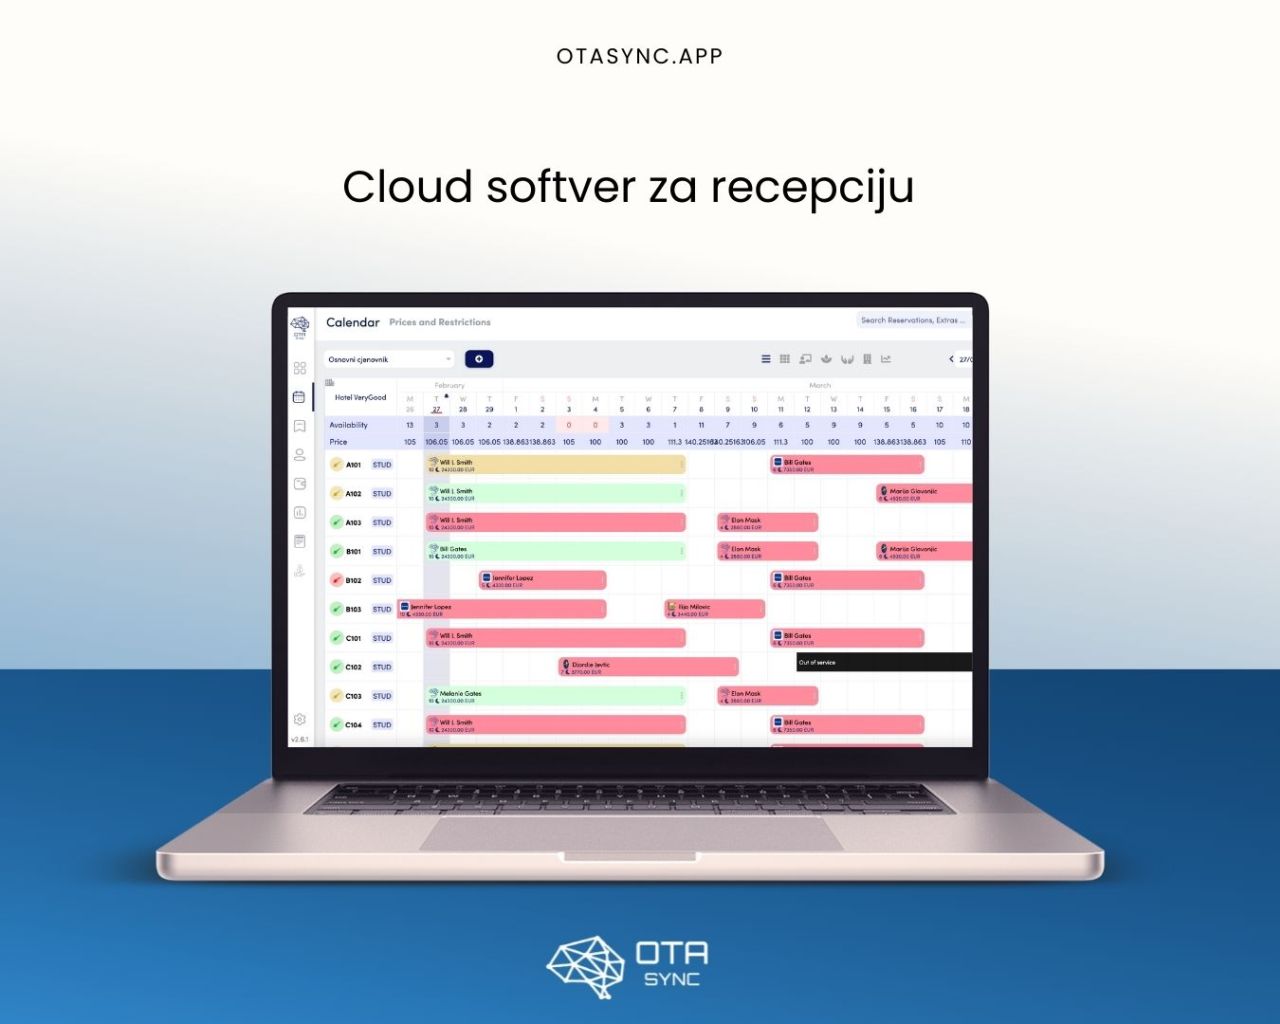 Cloud software ya reception ota sync